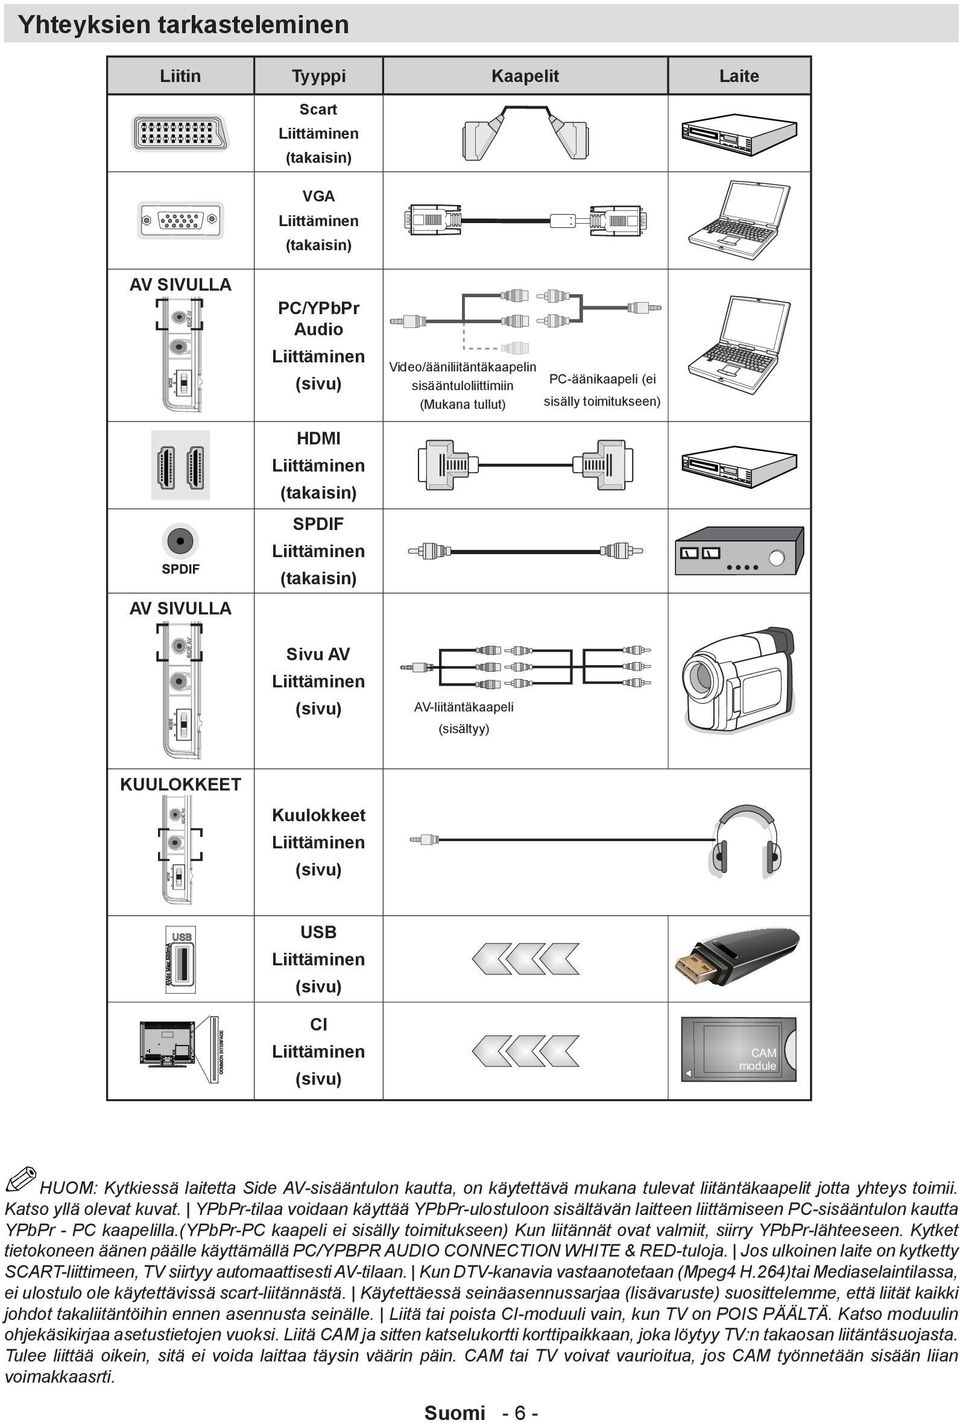 KUULOKKEET Kuulokkeet Liittäminen (sivu) USB Liittäminen (sivu) CI Liittäminen (sivu) HUOM: Kytkiessä laitetta Side AV-sisääntulon kautta, on käytettävä mukana tulevat liitäntäkaapelit jotta yhteys